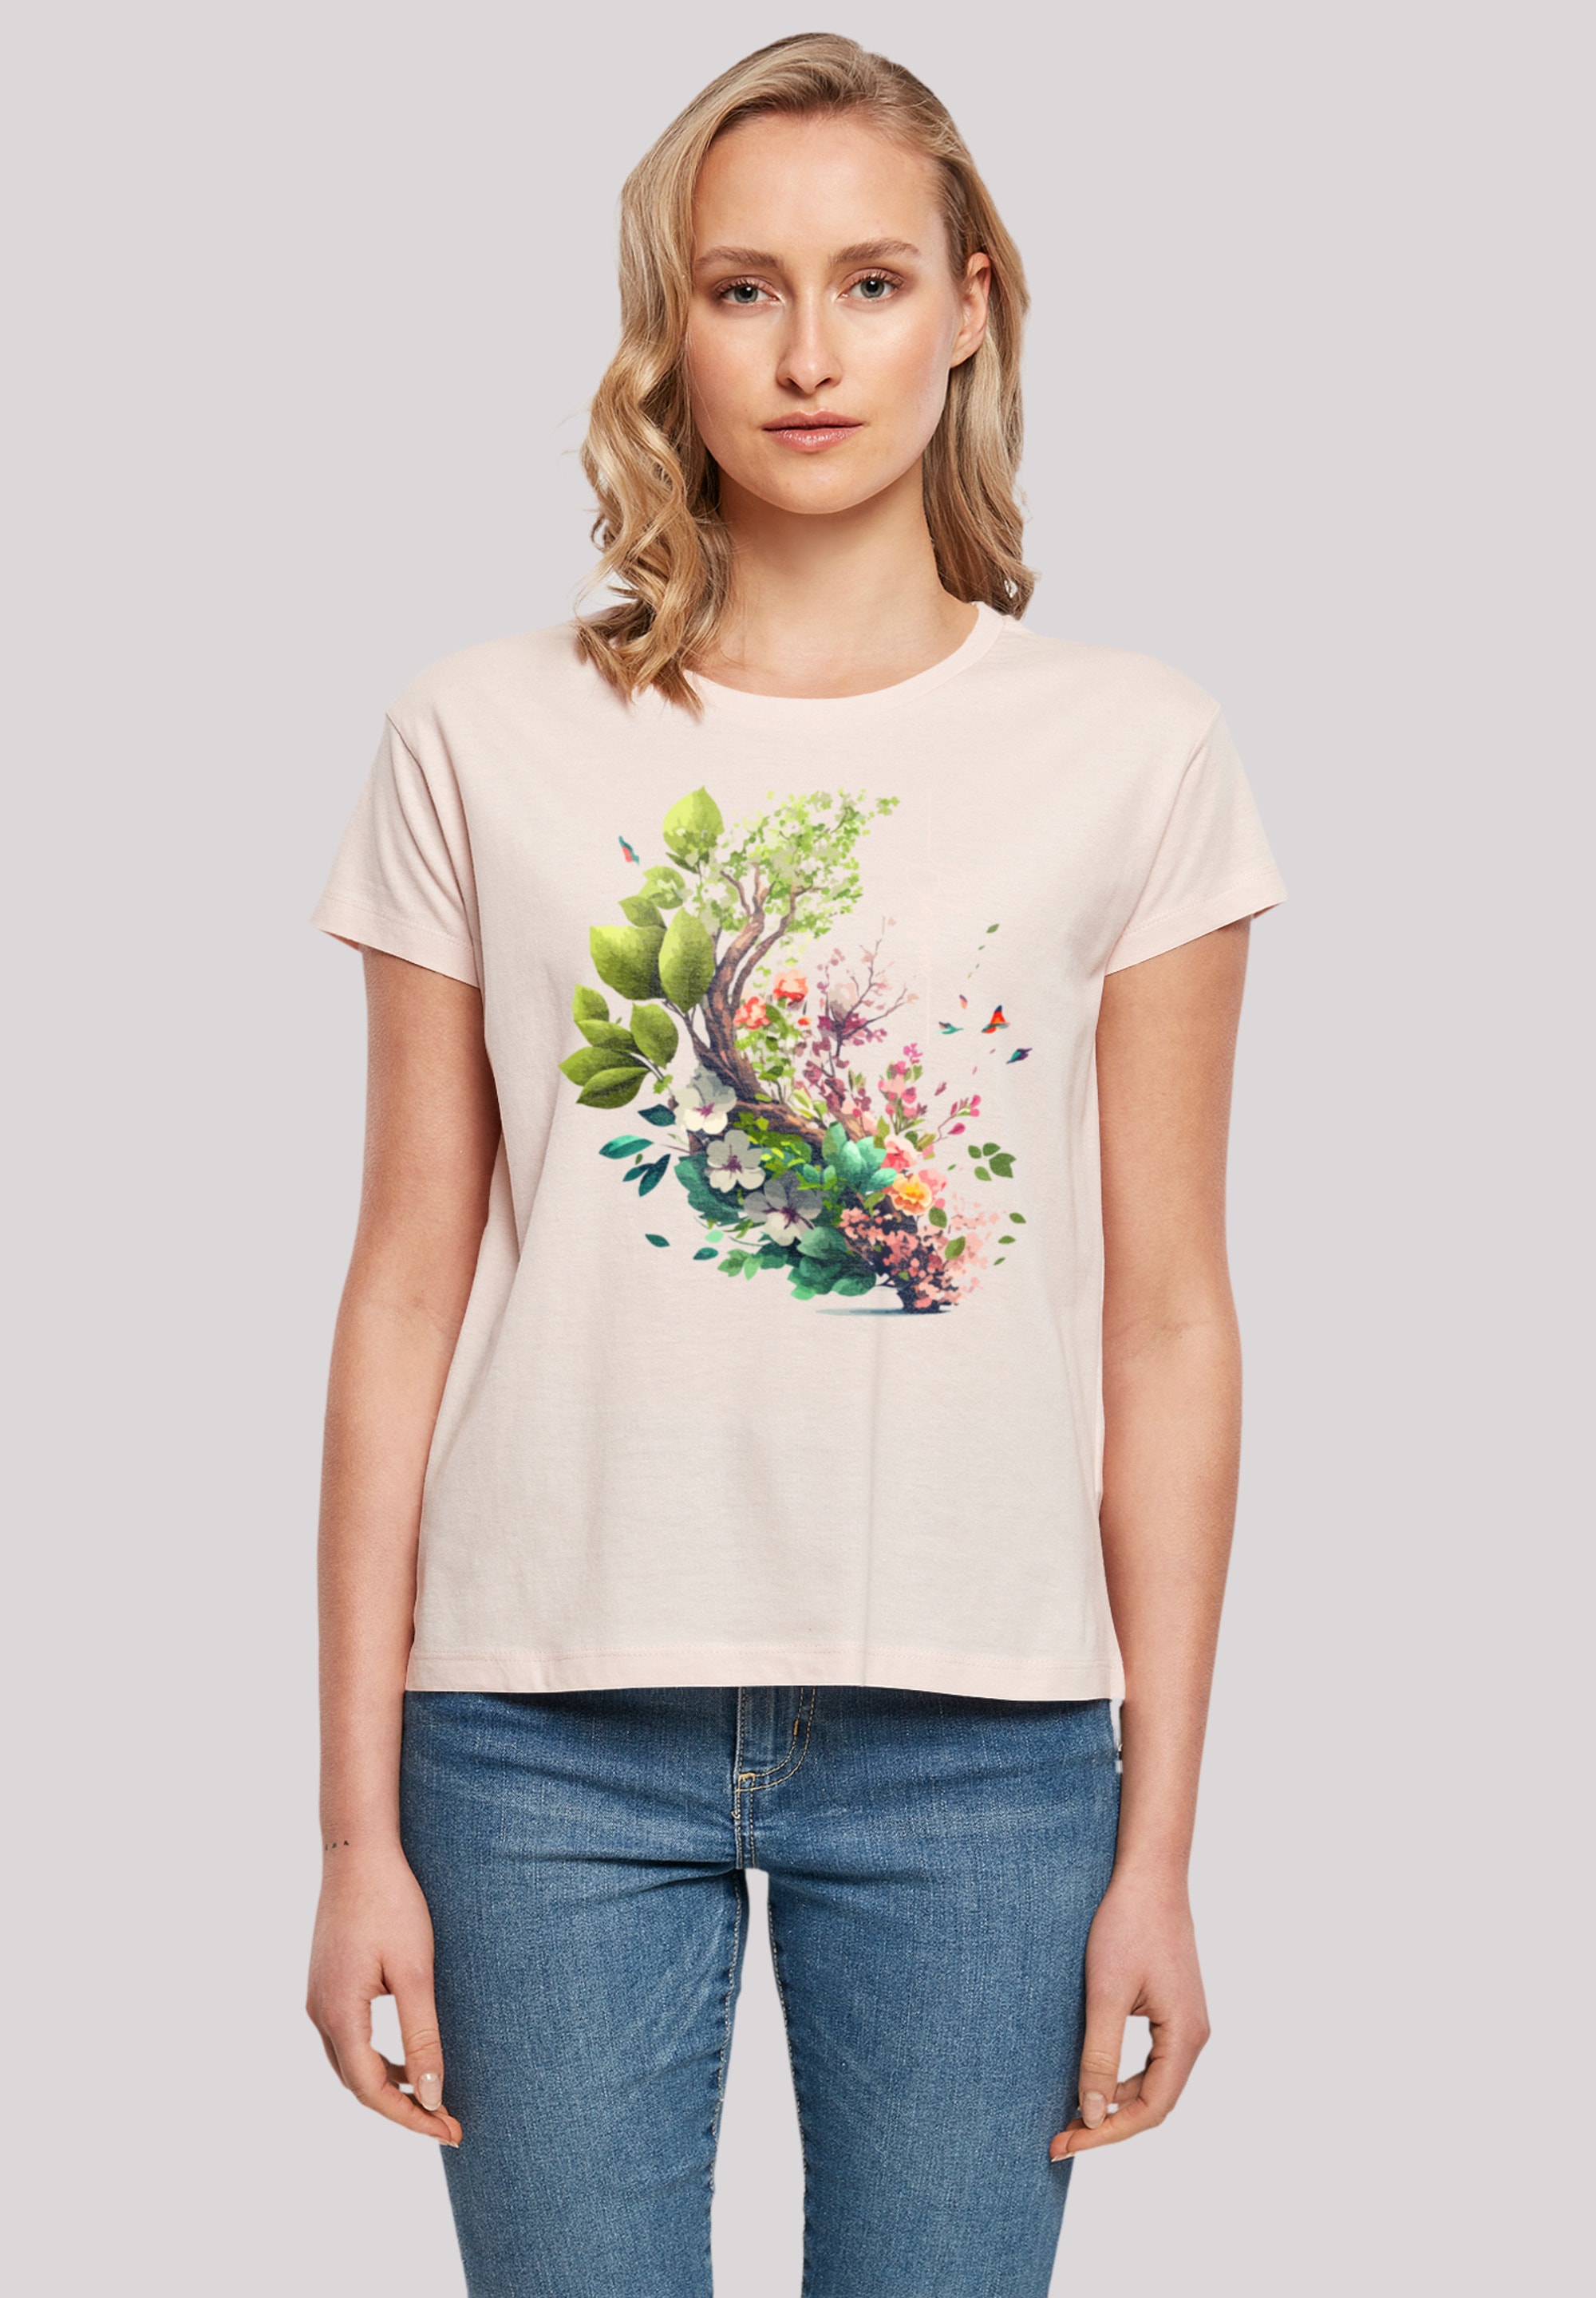 F4NT4STIC Marškinėliai »Spring Tree« Print